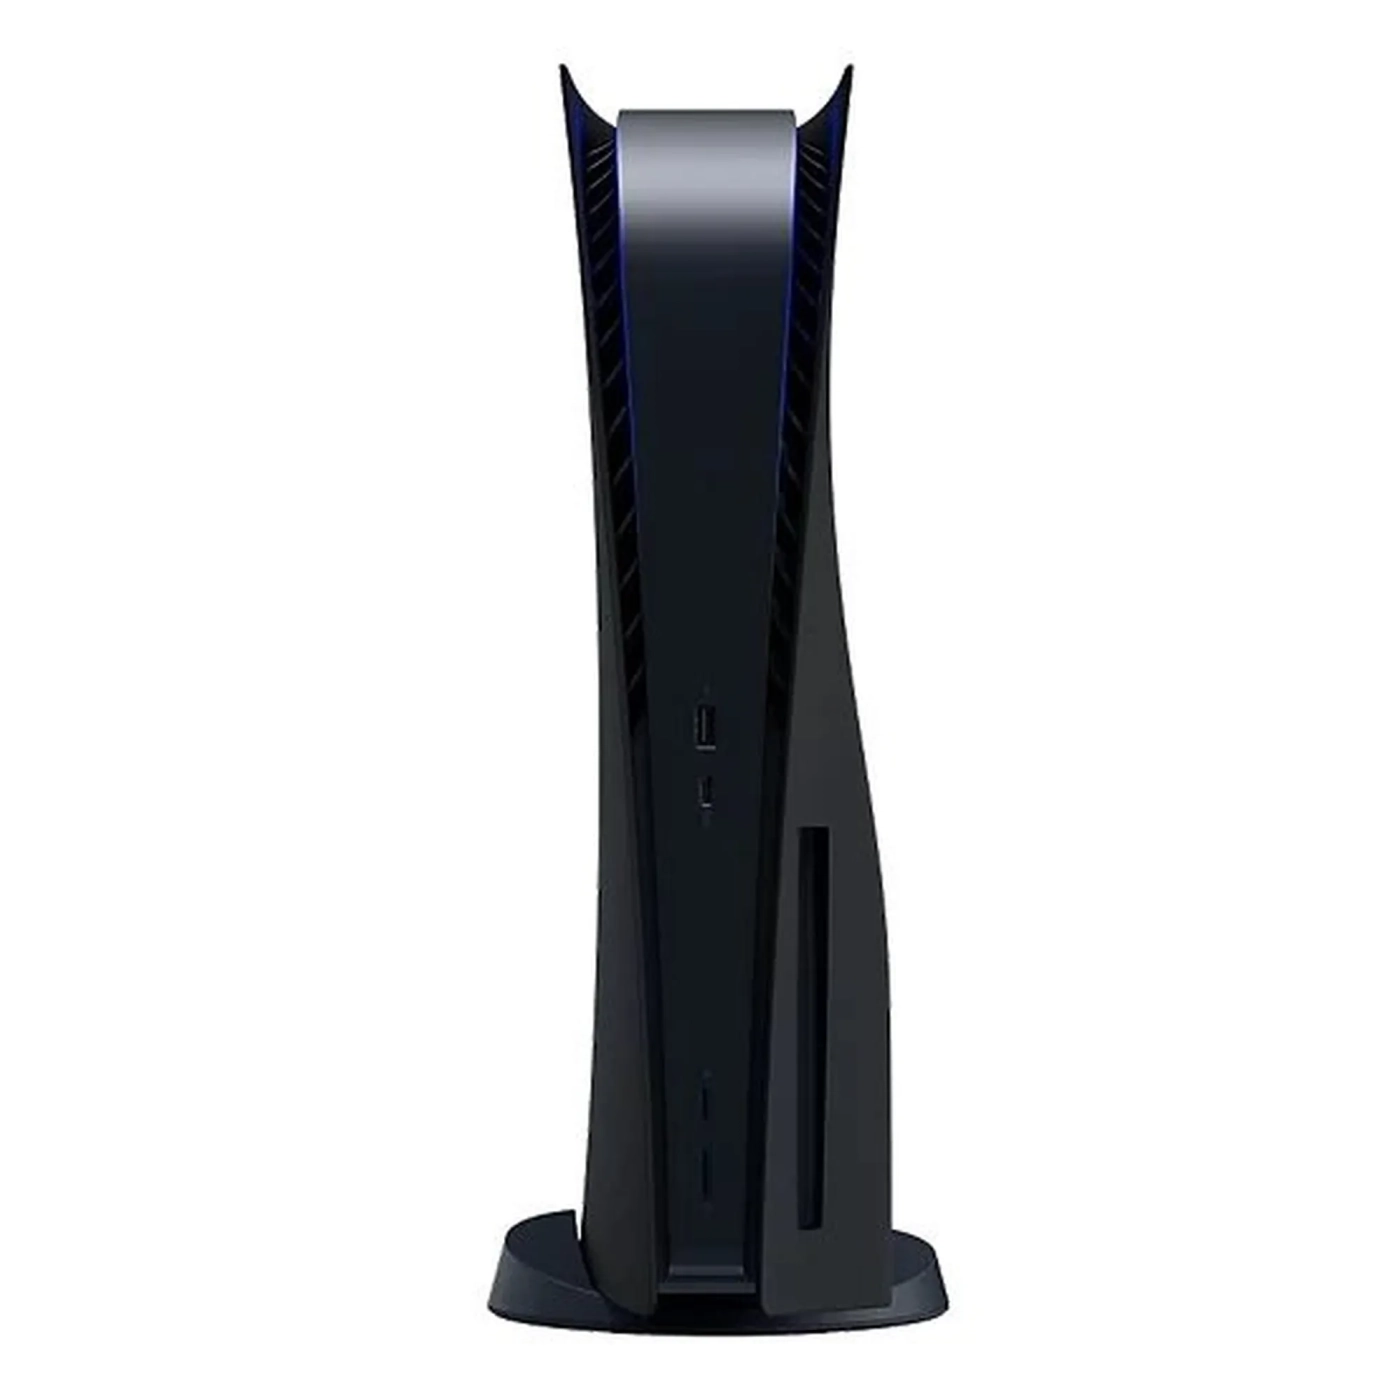 Купить Панели корпуса консоли Sony PlayStation 5 Black (9404095) - фото 2